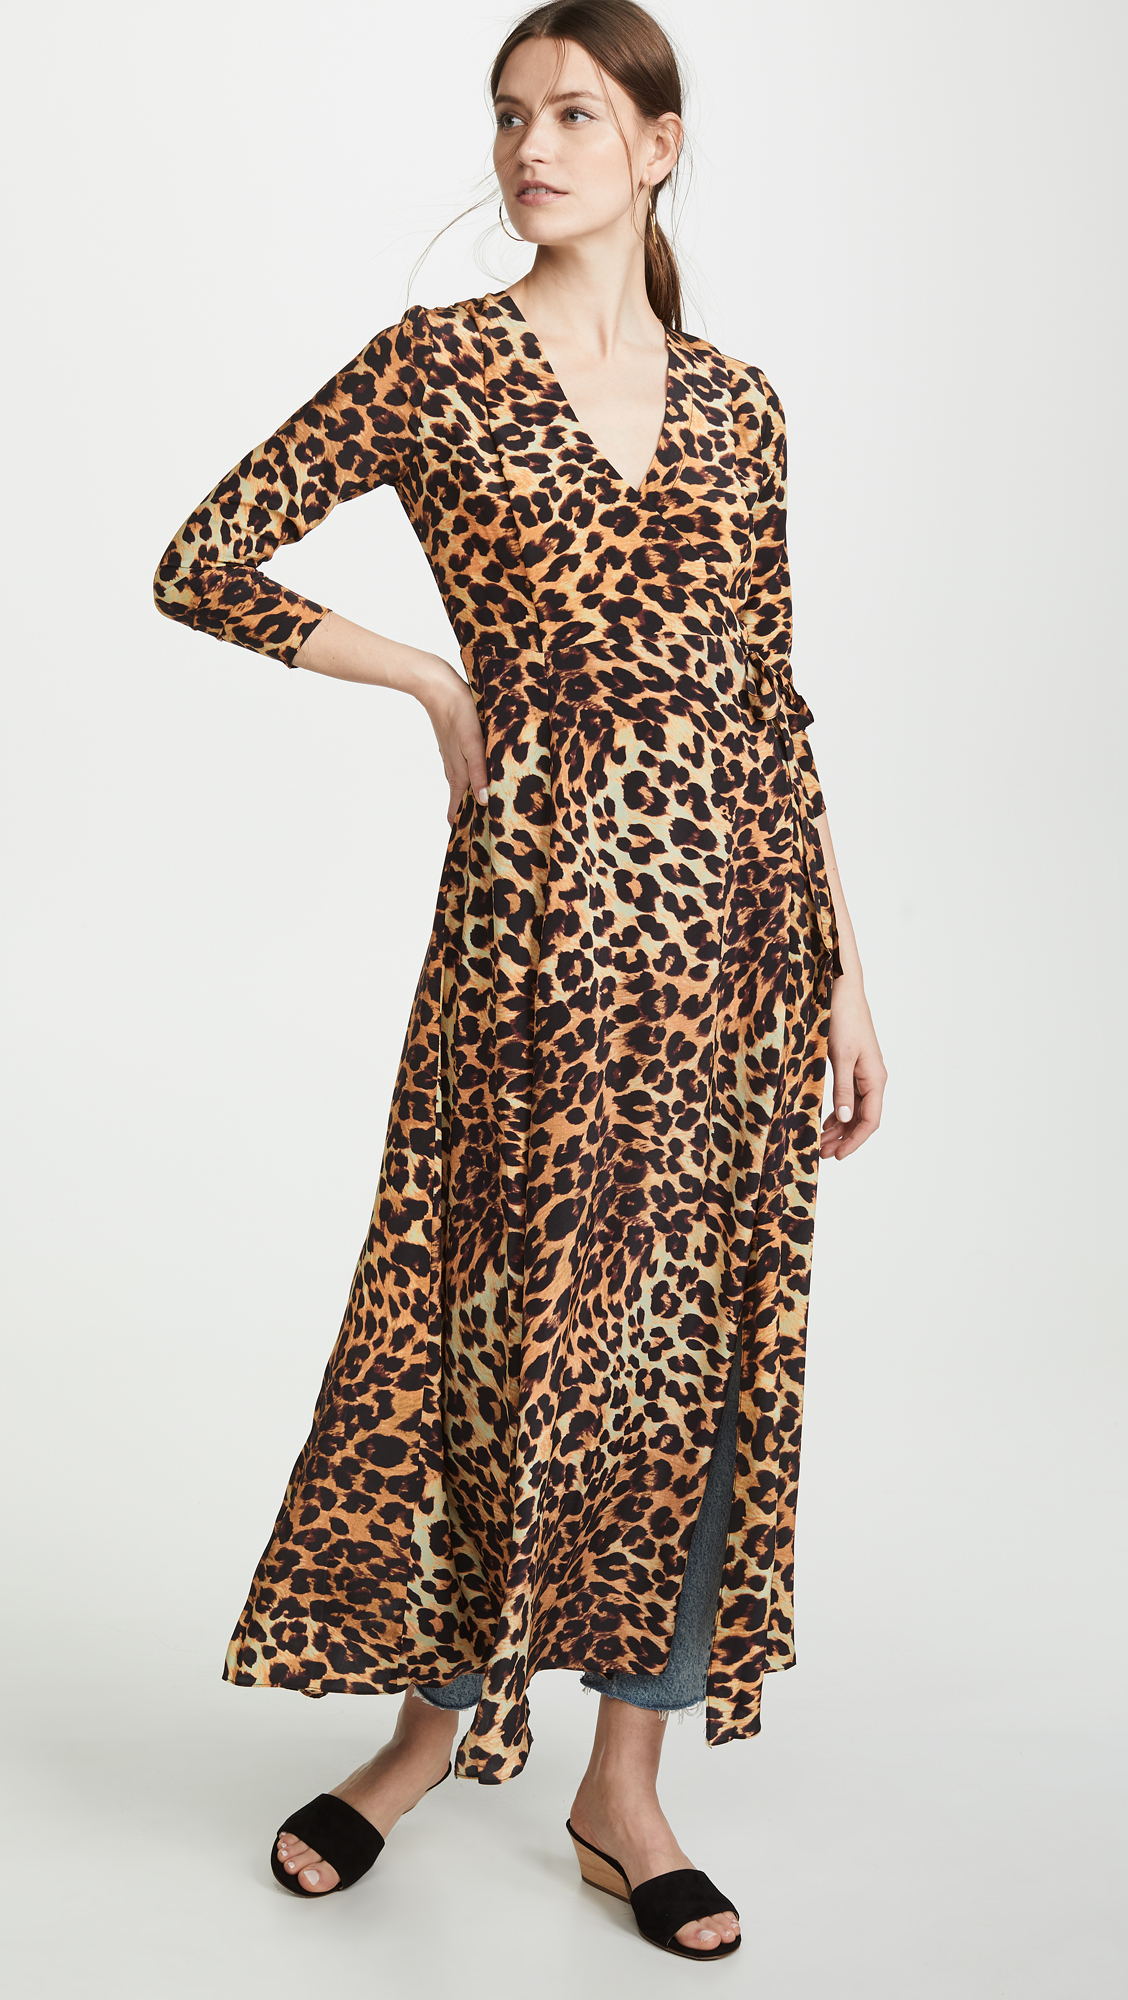 Leopard Print Wrap Dress Silk Satin